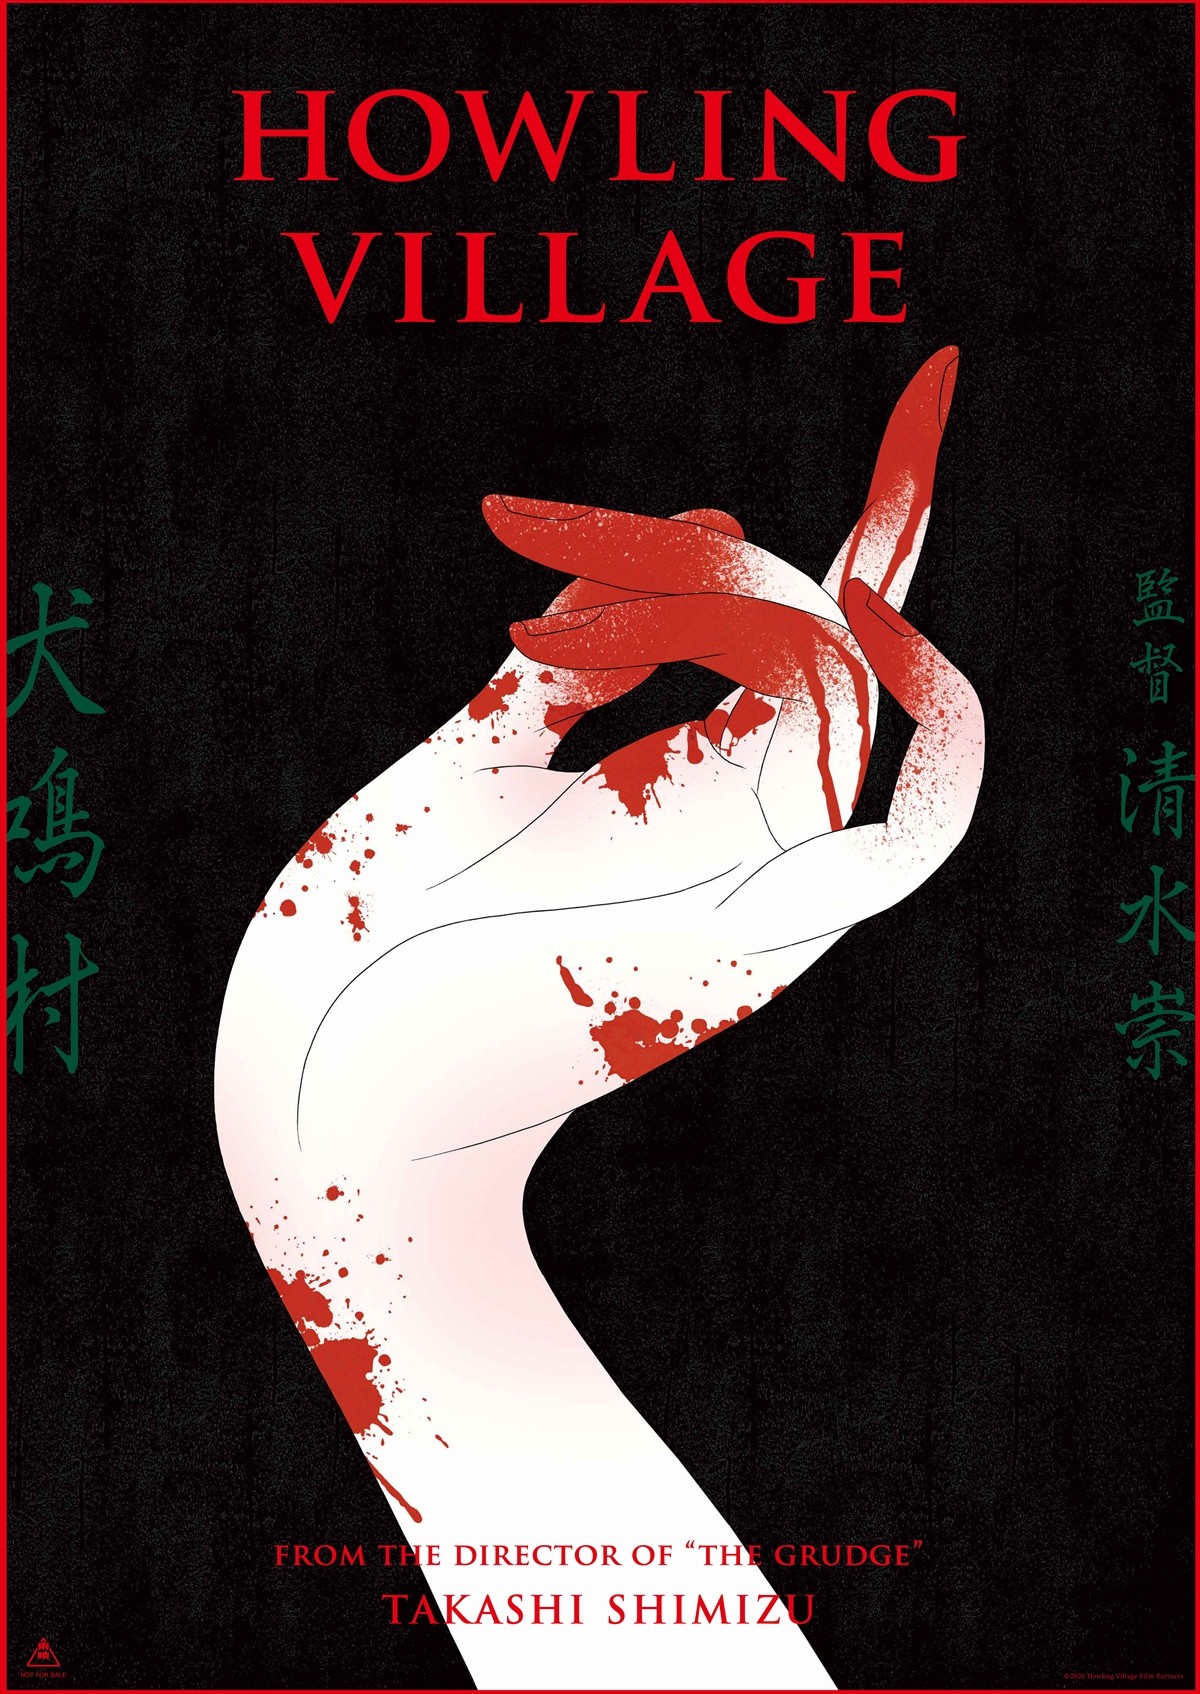 ただの“心霊スポットもの”にはしない――清水崇節さく裂の『犬鳴村』 中国の映画祭ではビックリな出来事に遭遇